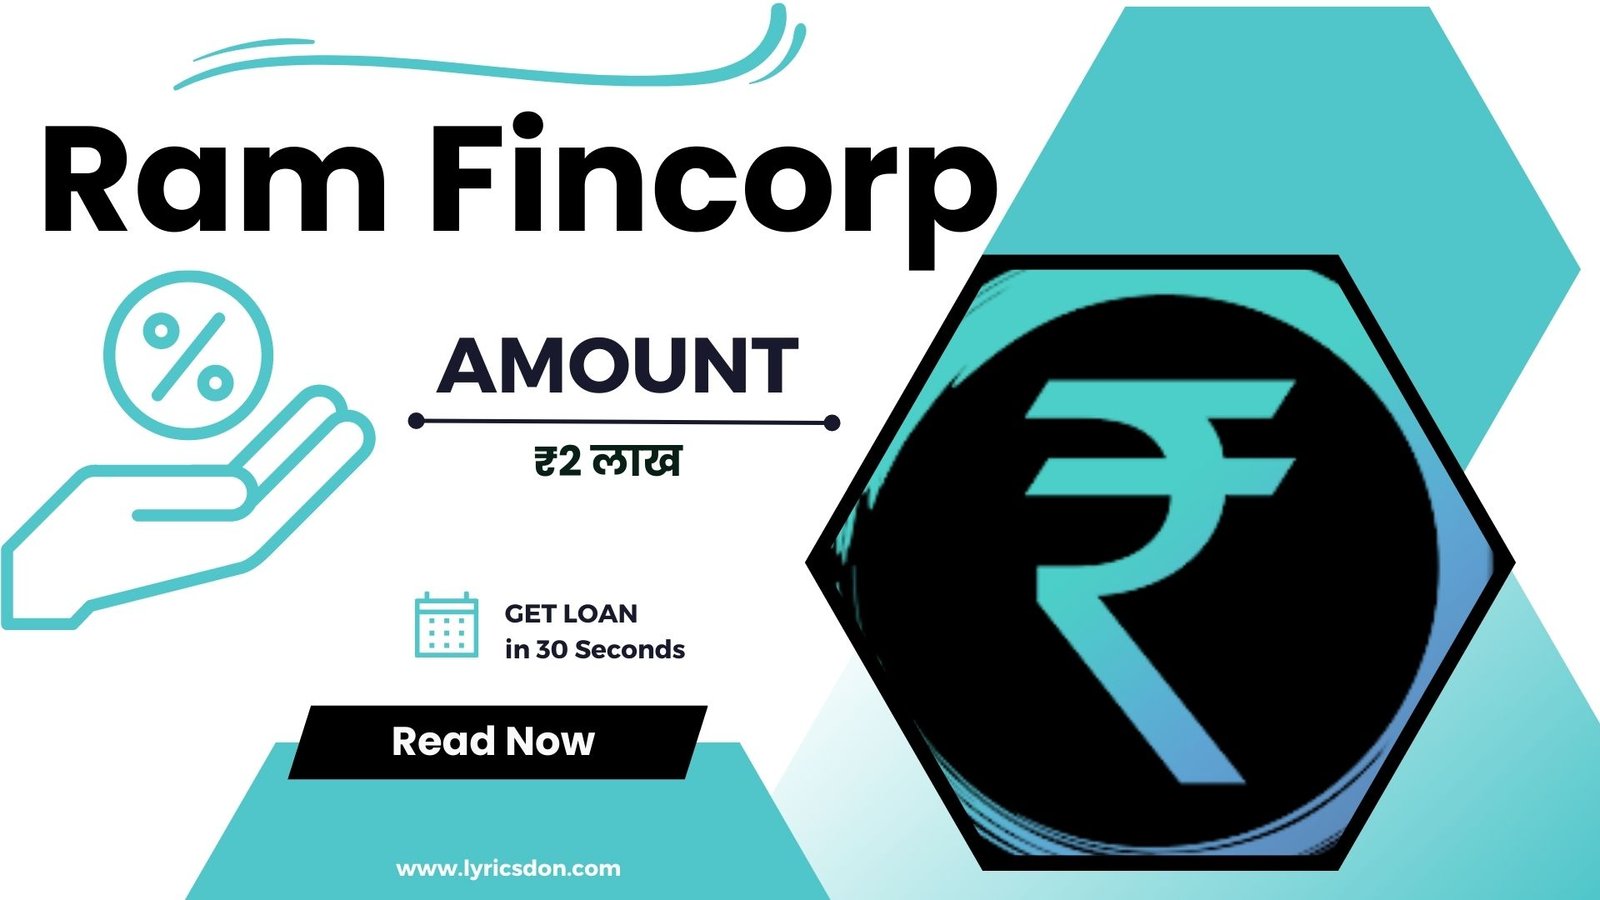 Ram Fincorp Loan App Loan Amount